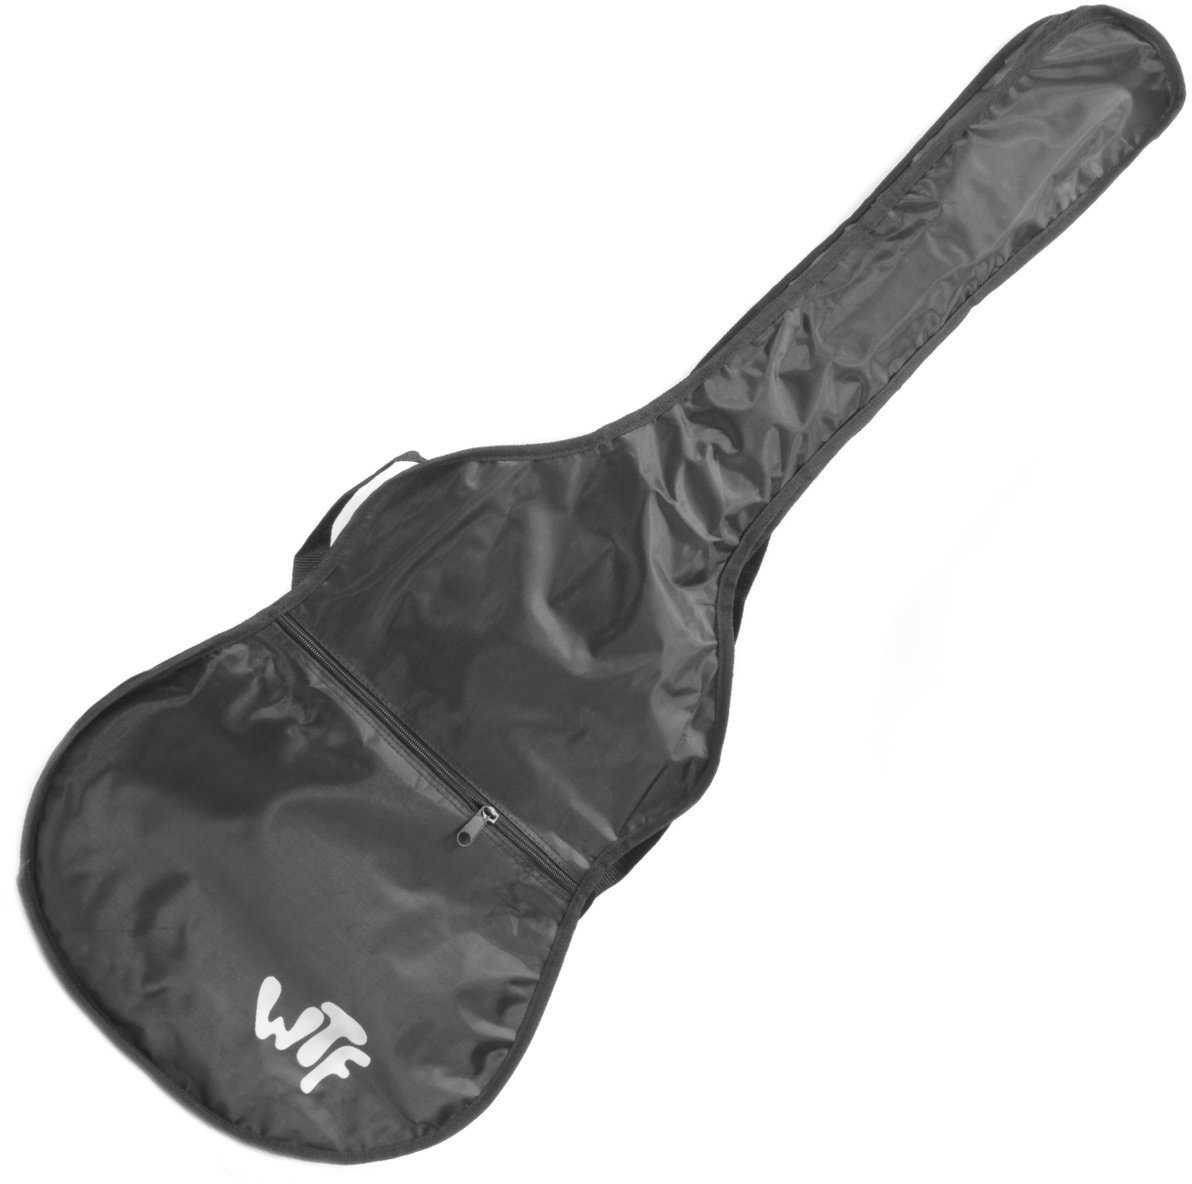 Gigbag for classical guitar WTF CG00 Gigbag for classical guitar Black